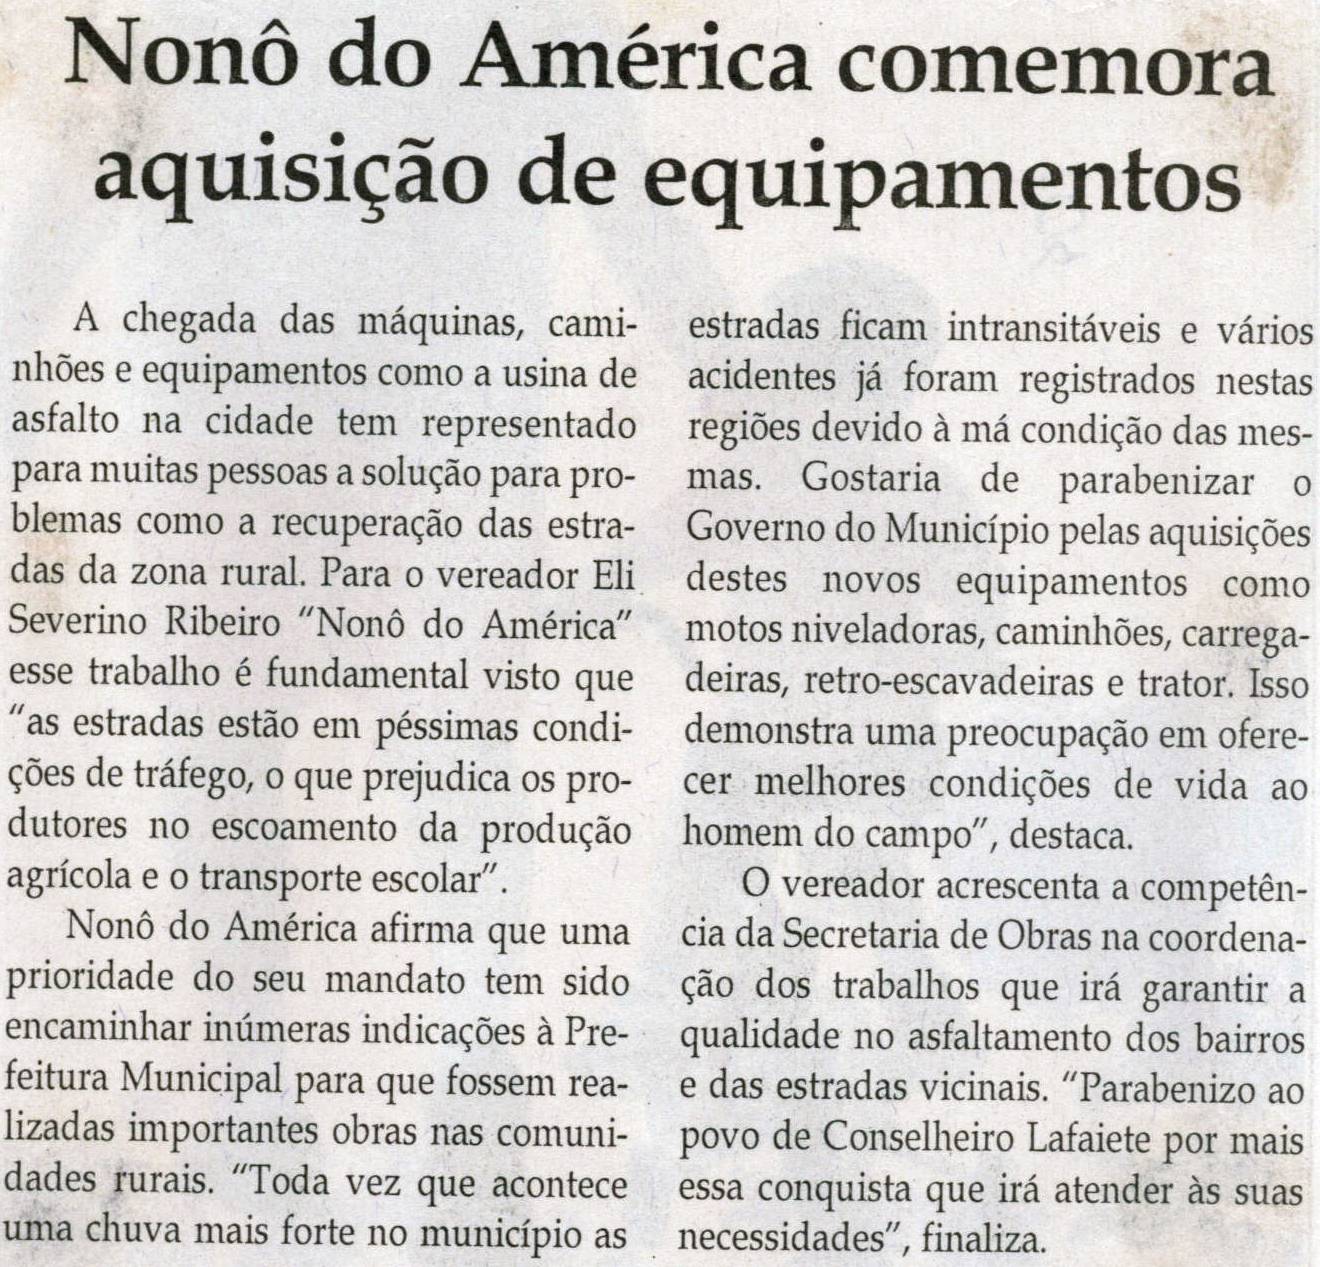 Nonô do América comemora aquisição de equipamentos. Jornal Correio da Cidade, Conselheiro Lafaiete, 31 jul. 2010, p. 04.